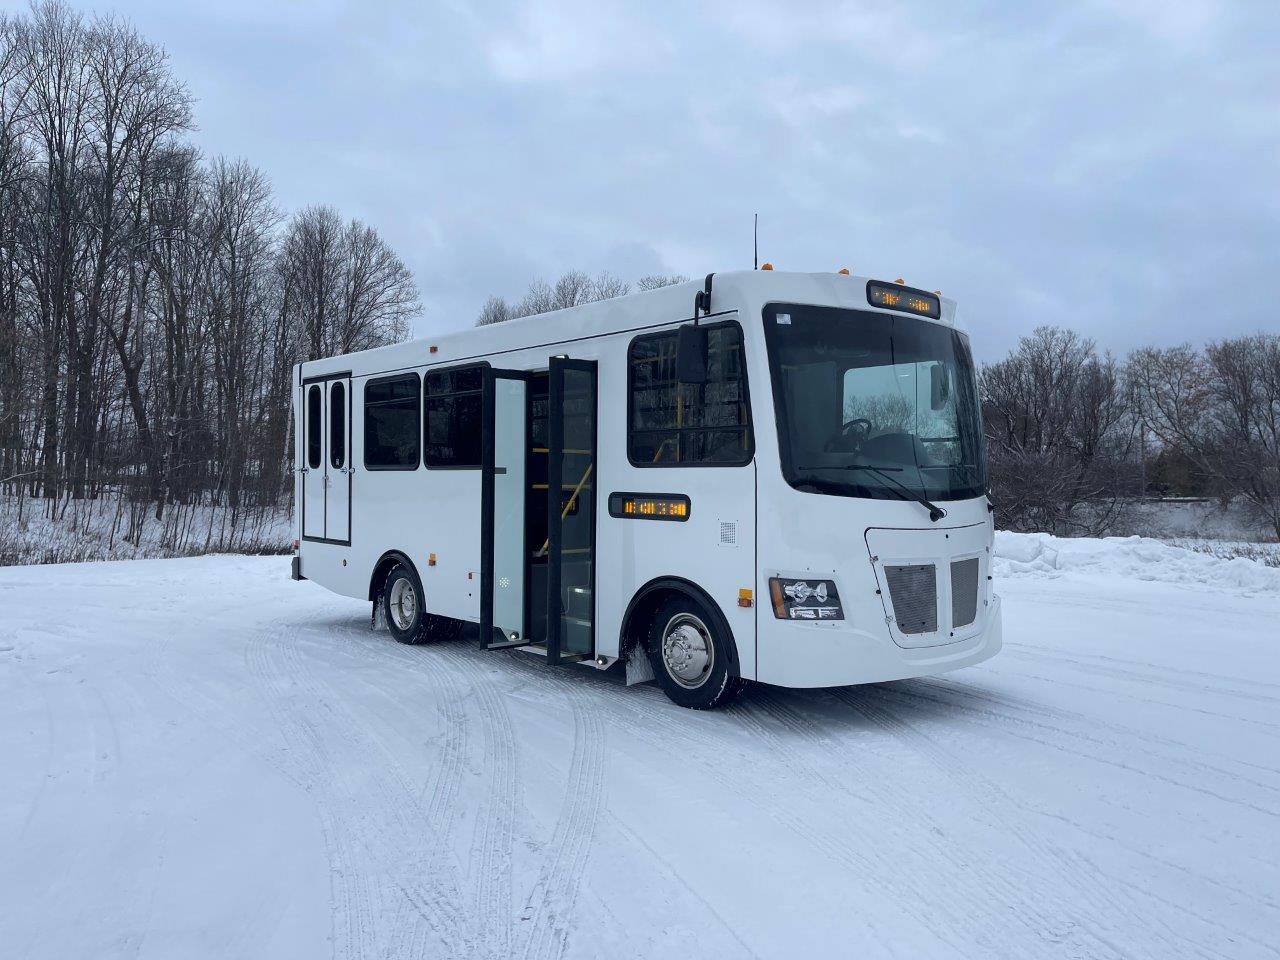 TROL7107 - New 2023 Hometown View Bus